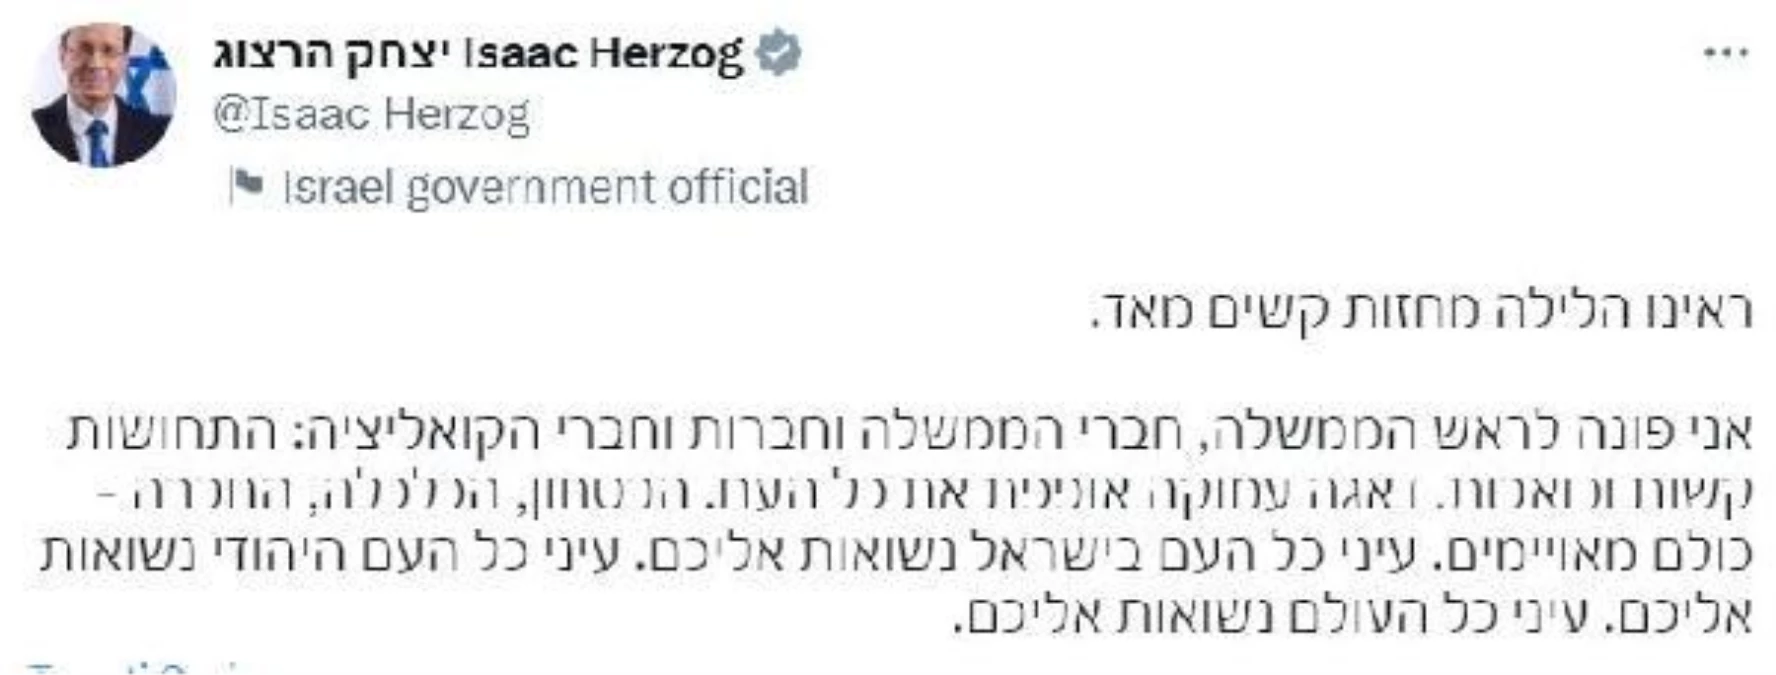 İsrail\'de protestolar sürüyor: Cumhurbaşkanı Herzog\'dan yasama sürecini durdurma çağrısı